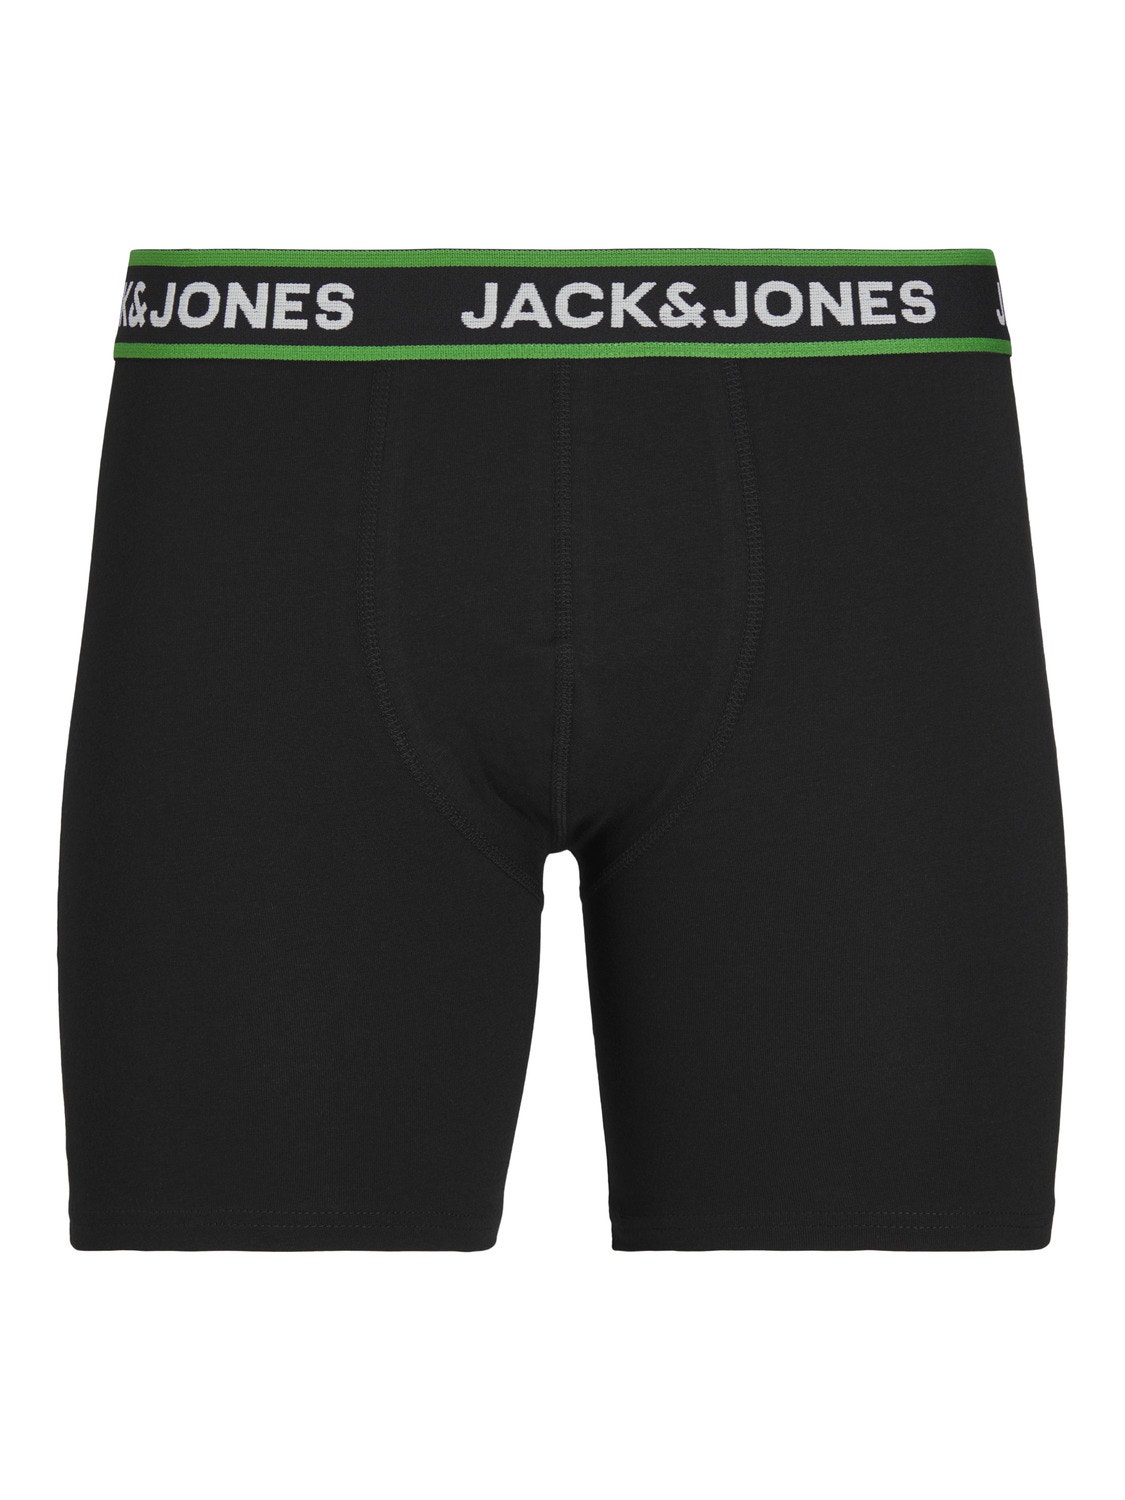 Jack & Jones 5er-pack Boxer briefs -Black - 12251386